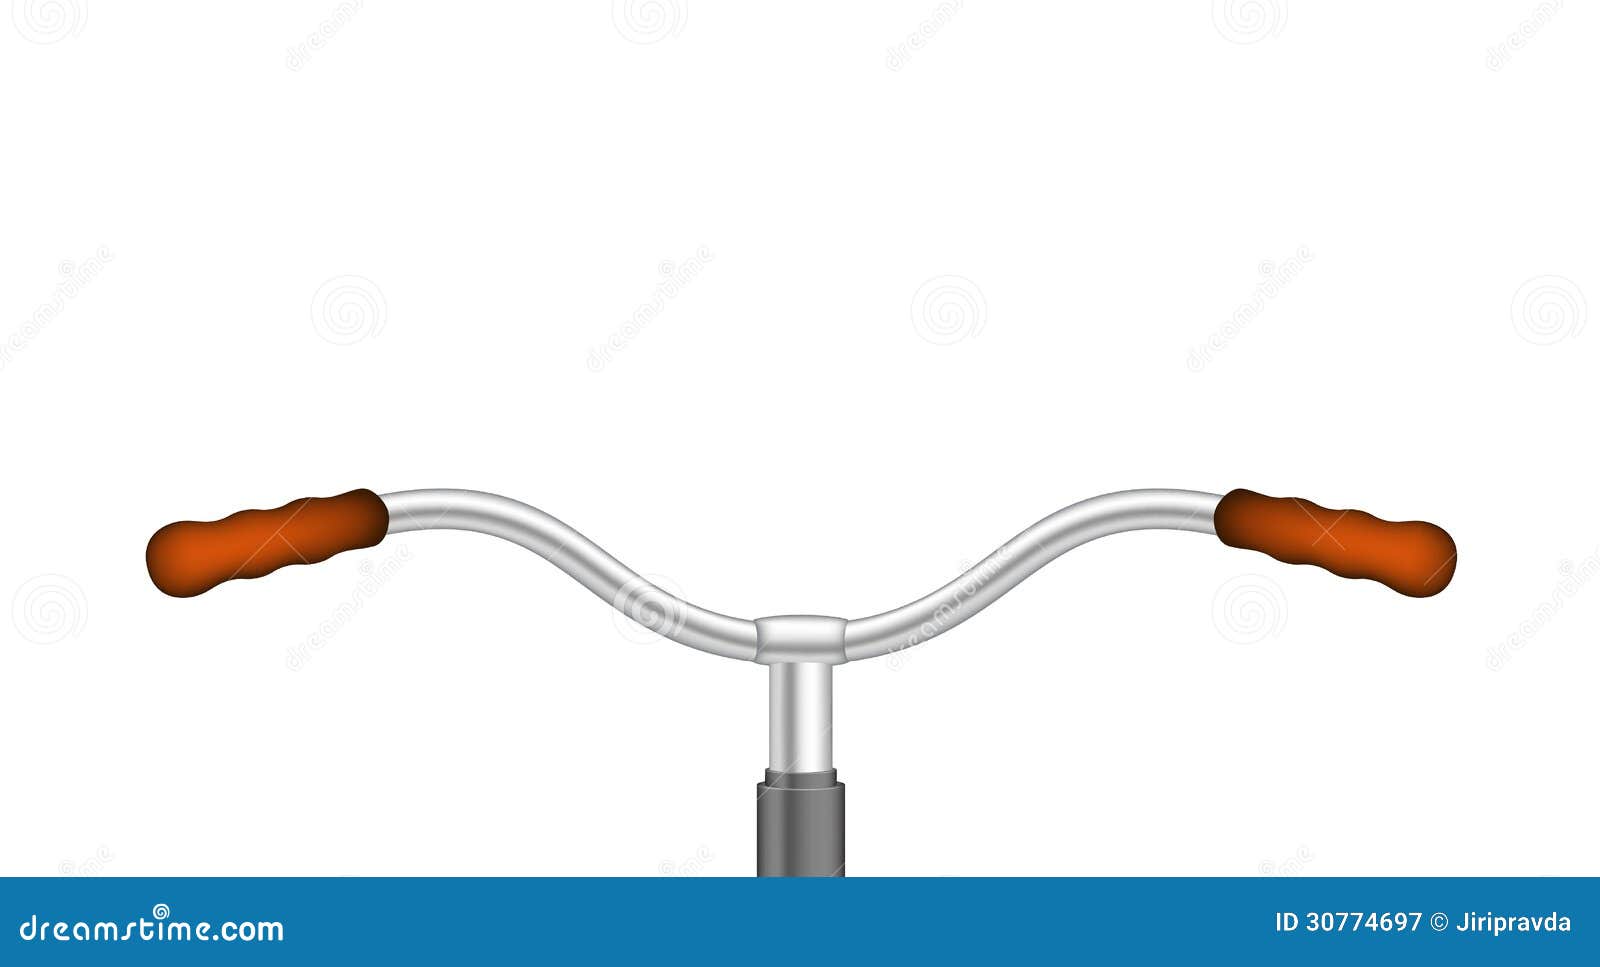 timmerman binnenkort Waar Stuur van een fiets vector illustratie. Illustration of vrijetijdsbesteding  - 30774697